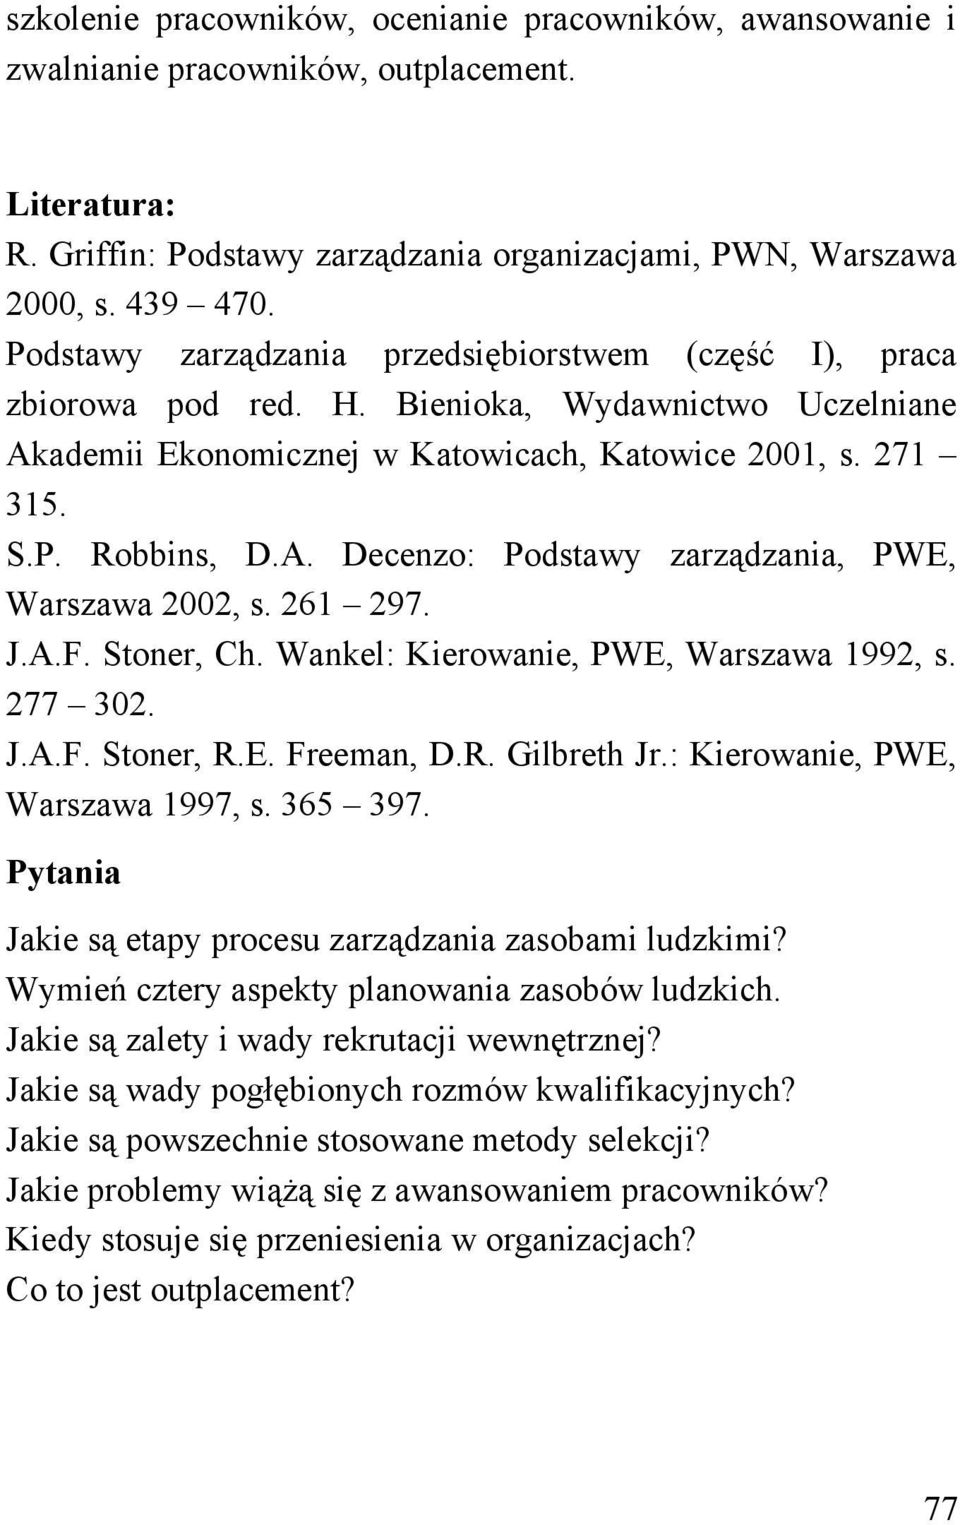 261 297. J.A.F. Stoner, Ch. Wankel: Kierowanie, PWE, Warszawa 1992, s. 277 302. J.A.F. Stoner, R.E. Freeman, D.R. Gilbreth Jr.: Kierowanie, PWE, Warszawa 1997, s. 365 397.